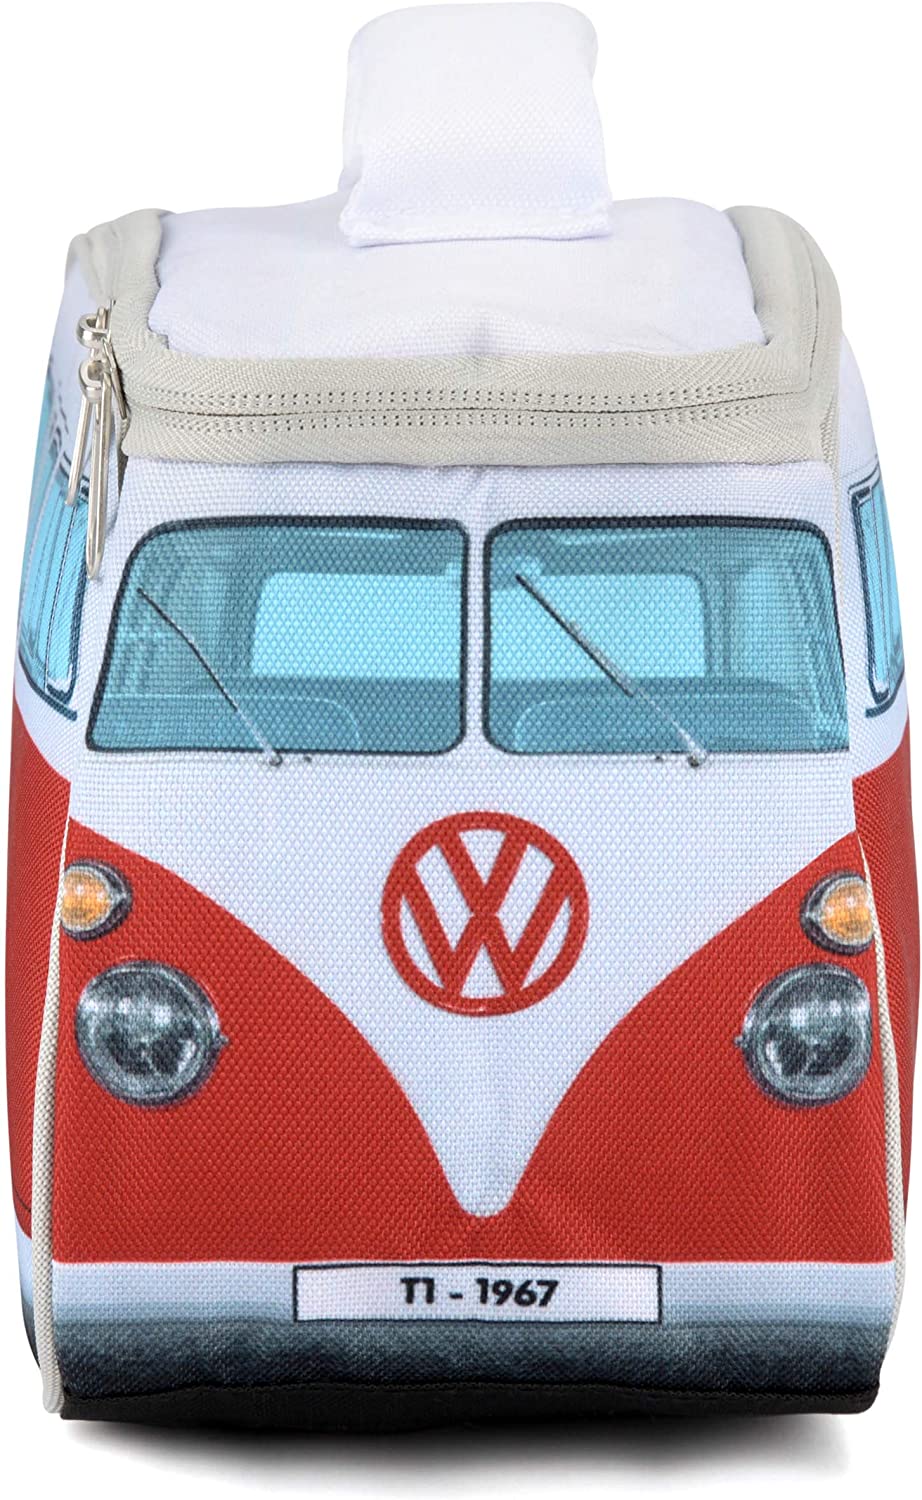  Official Volkswagen Merchandise